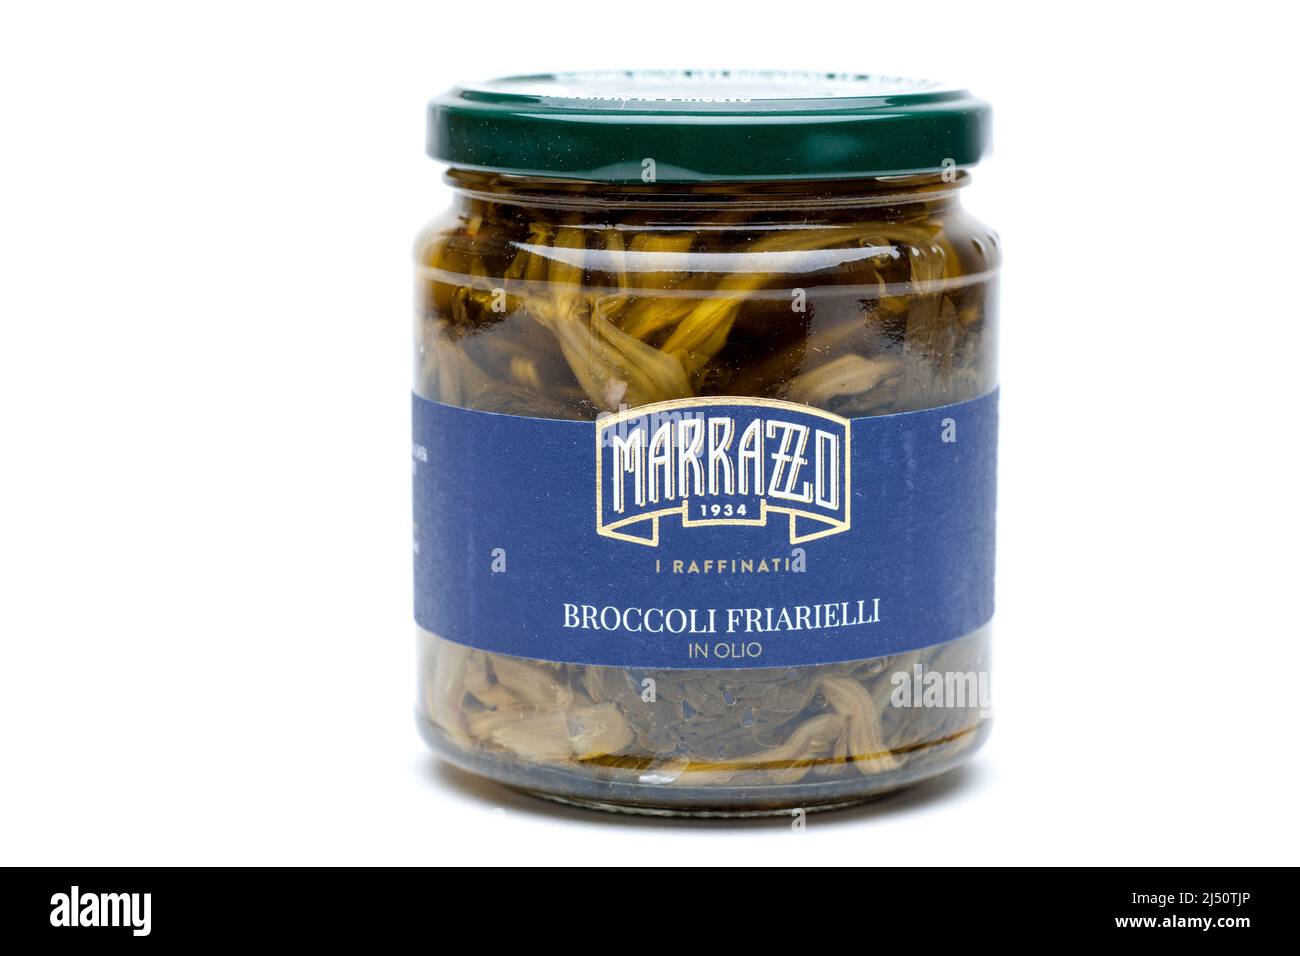 Tarro de Broccoli Friarielli en Aceite Foto de stock